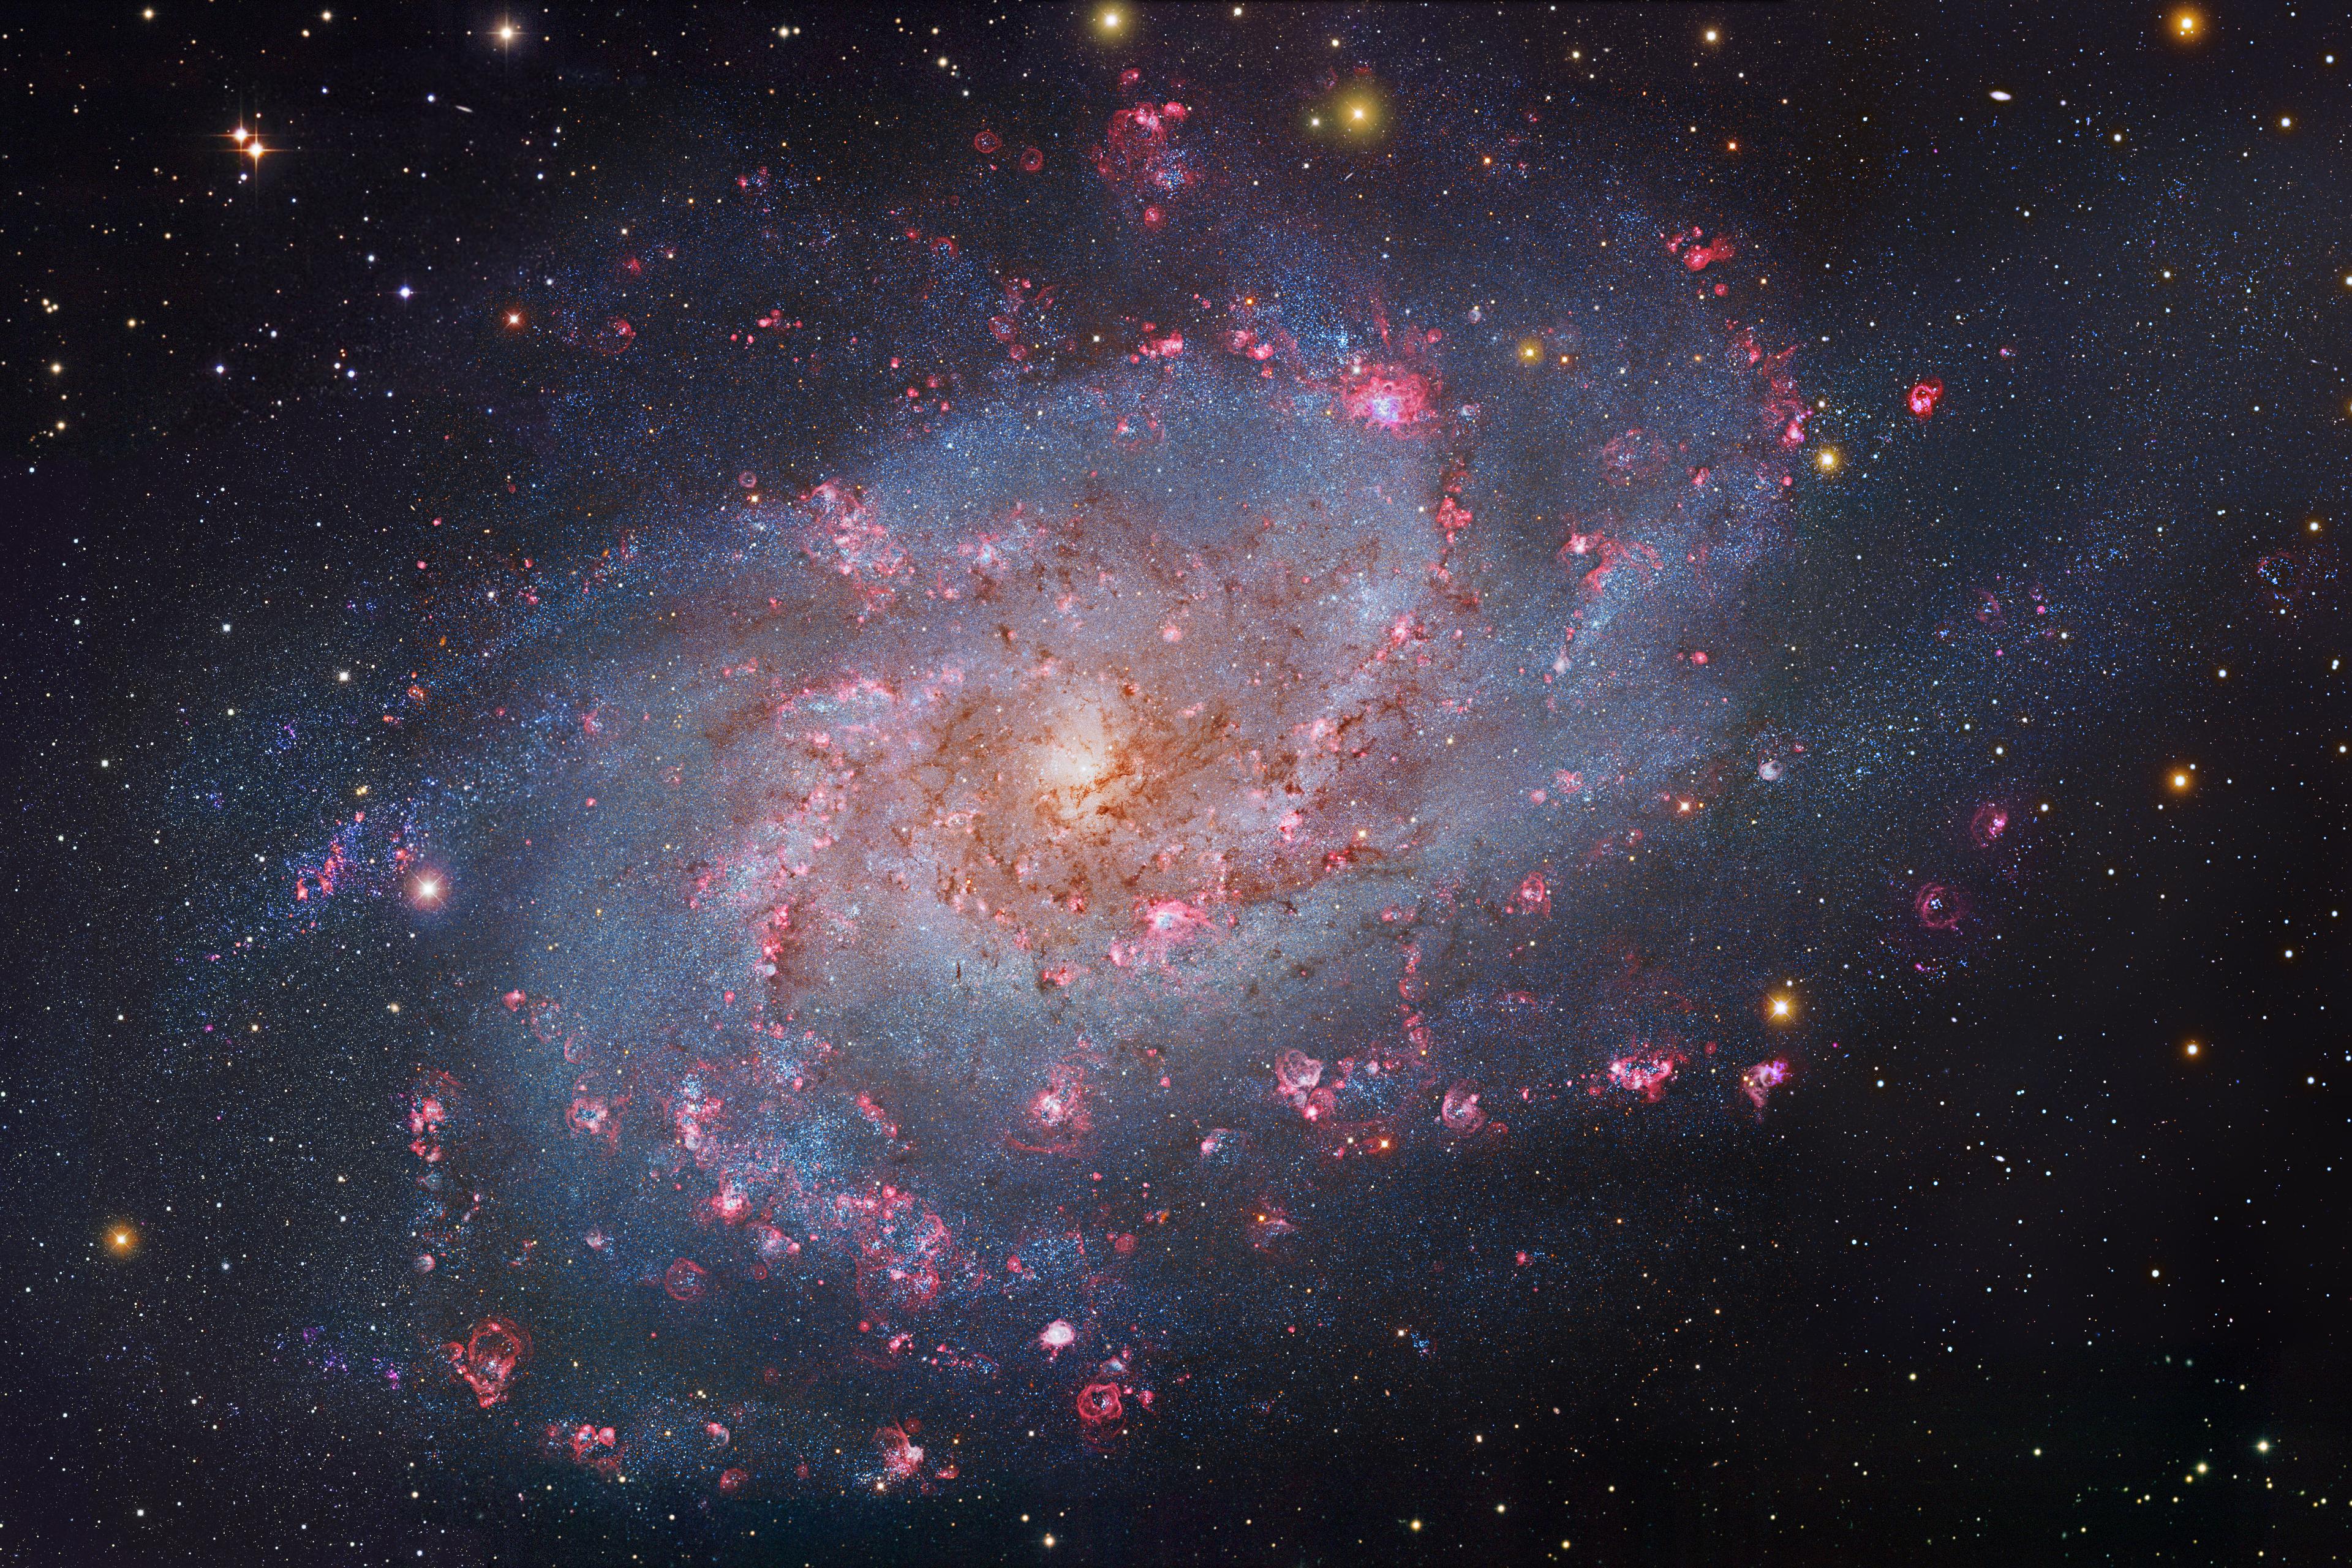 مجرّة تُرى من وجهها بأذرع حلزونيّة واسعة تحوي عناقيد نجميّة زرقاء ومناطق تشكّل نجميّ ورديّة